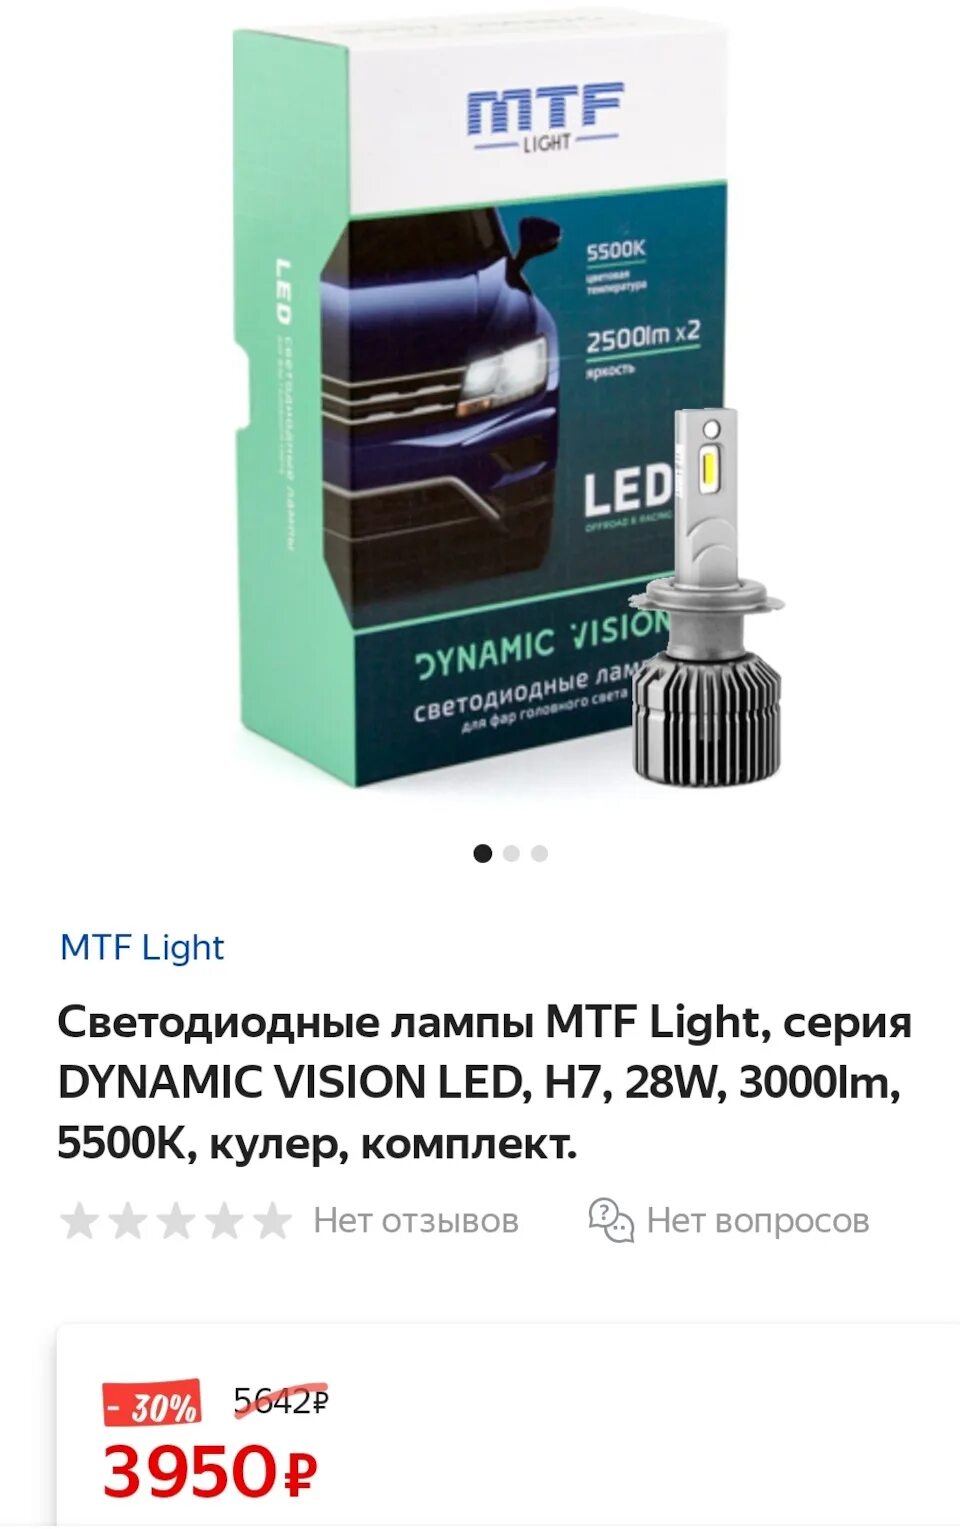 Светодиодные лампы vision. Лед лампы МТФ h7. МТФ В Ближний свет h7 лед лампы. Переходник н7 на лэд лампы MTF. MTF Dynamic Vision led лампы Drive 2.